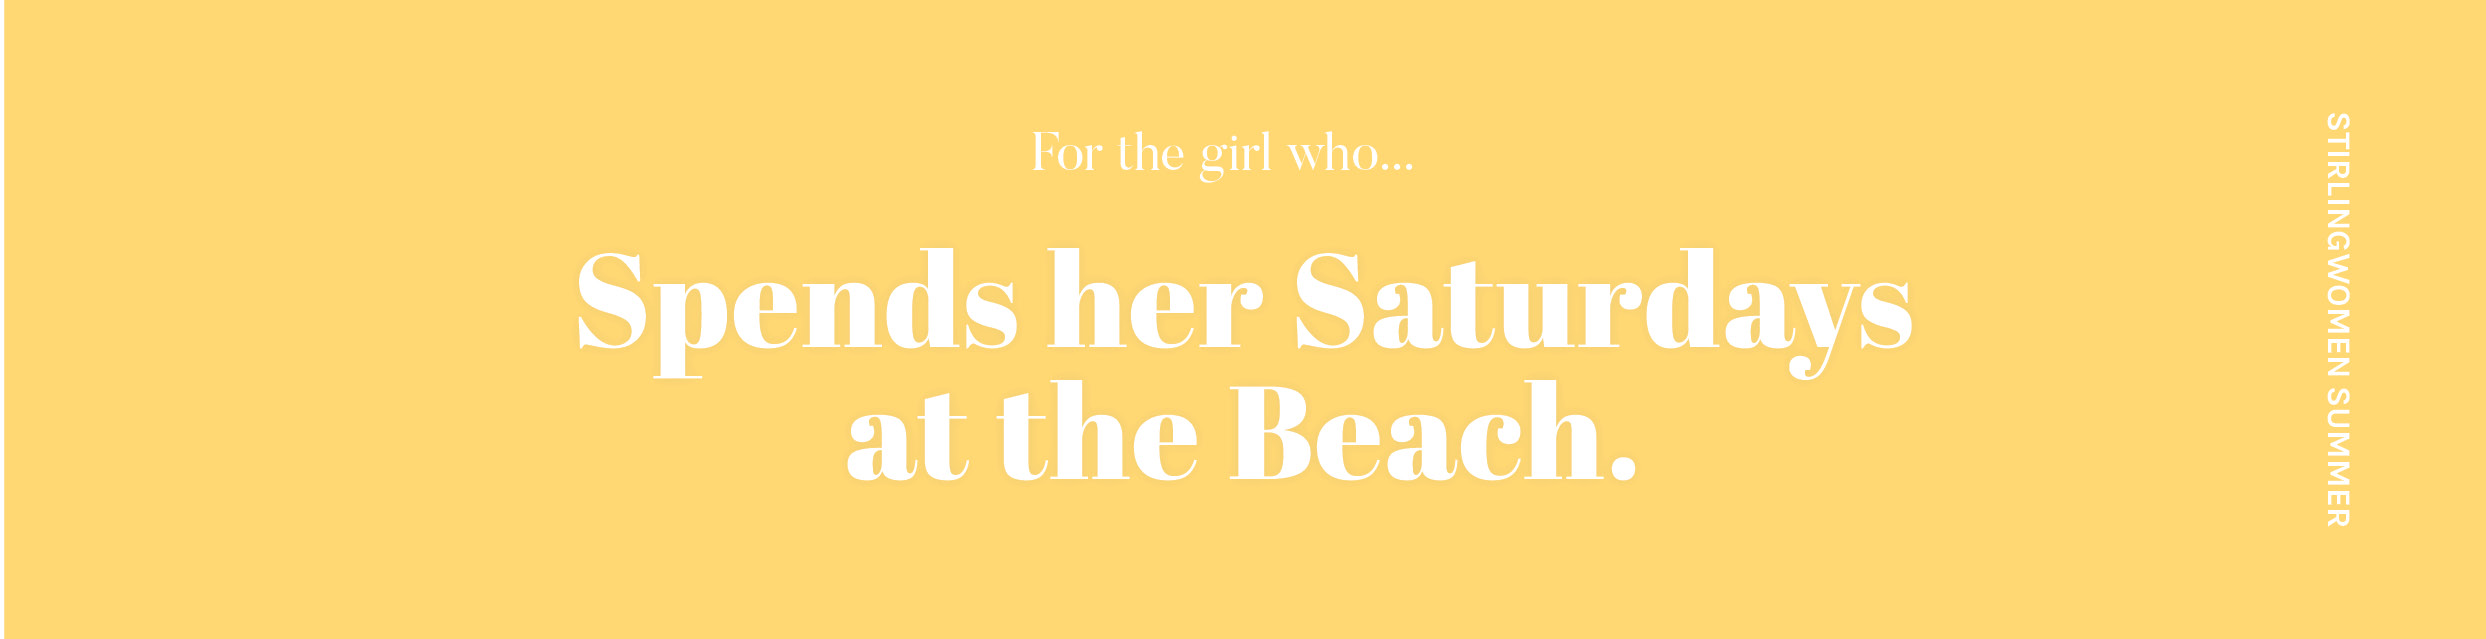 The Beach Girl